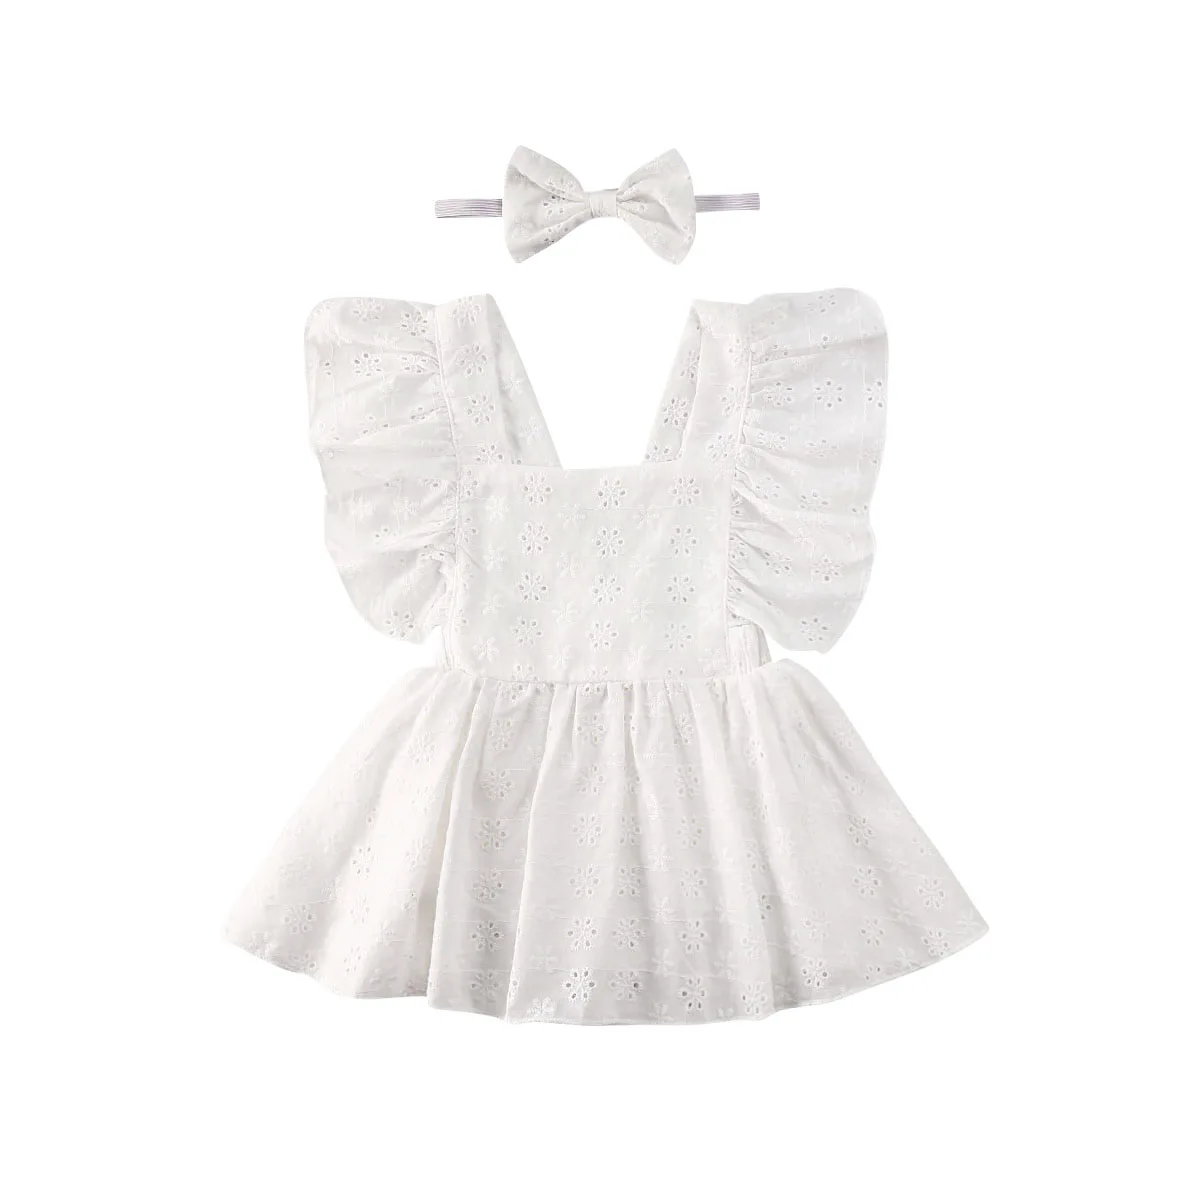 От Carter's, детский костюмчик, комплект одежды из 2 предметов для новорожденных мальчиков детская одежда для маленьких девочек белое кружевное платье без рукавов; платье-боди с цветочным принтом Детские комбинезоны